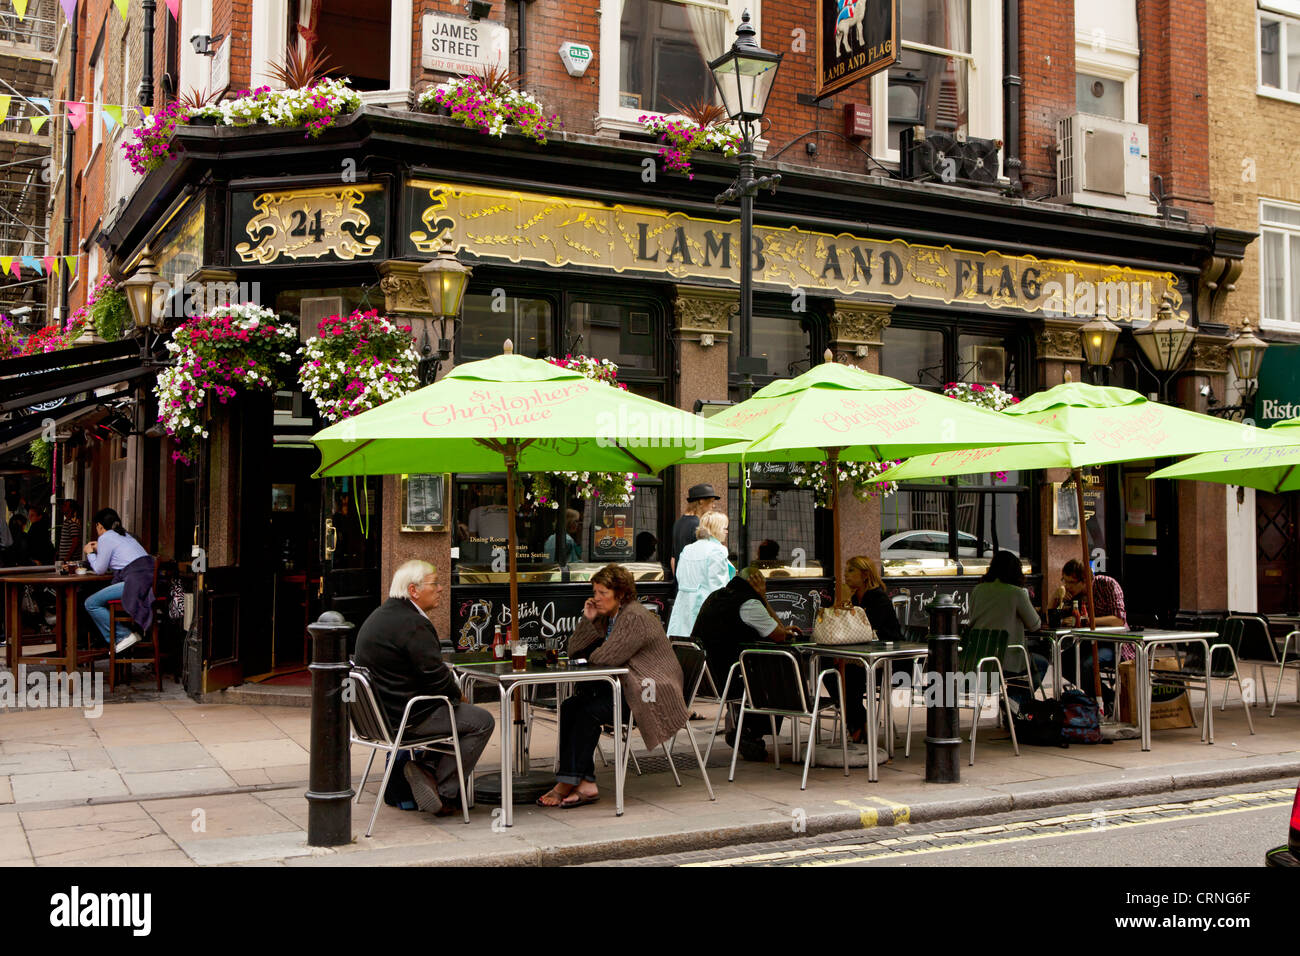 Menschen sitzen unter den Sonnenschirmen vor dem Lamm und Fahne Pub in der James Street. Stockfoto